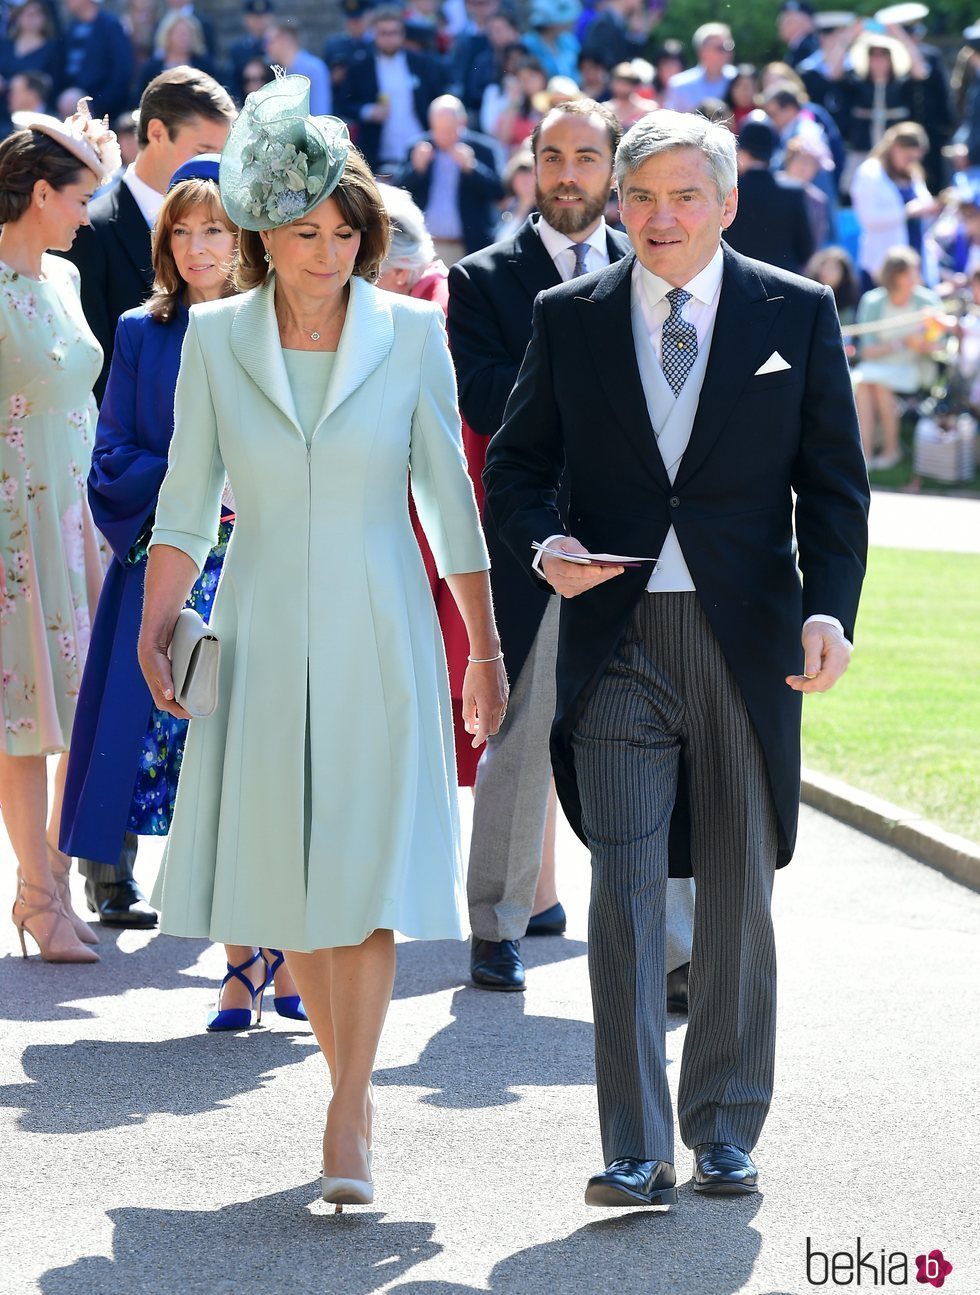 Michael y Carole Middleton acuden a la boda del Príncipe Harry y Meghan Markle